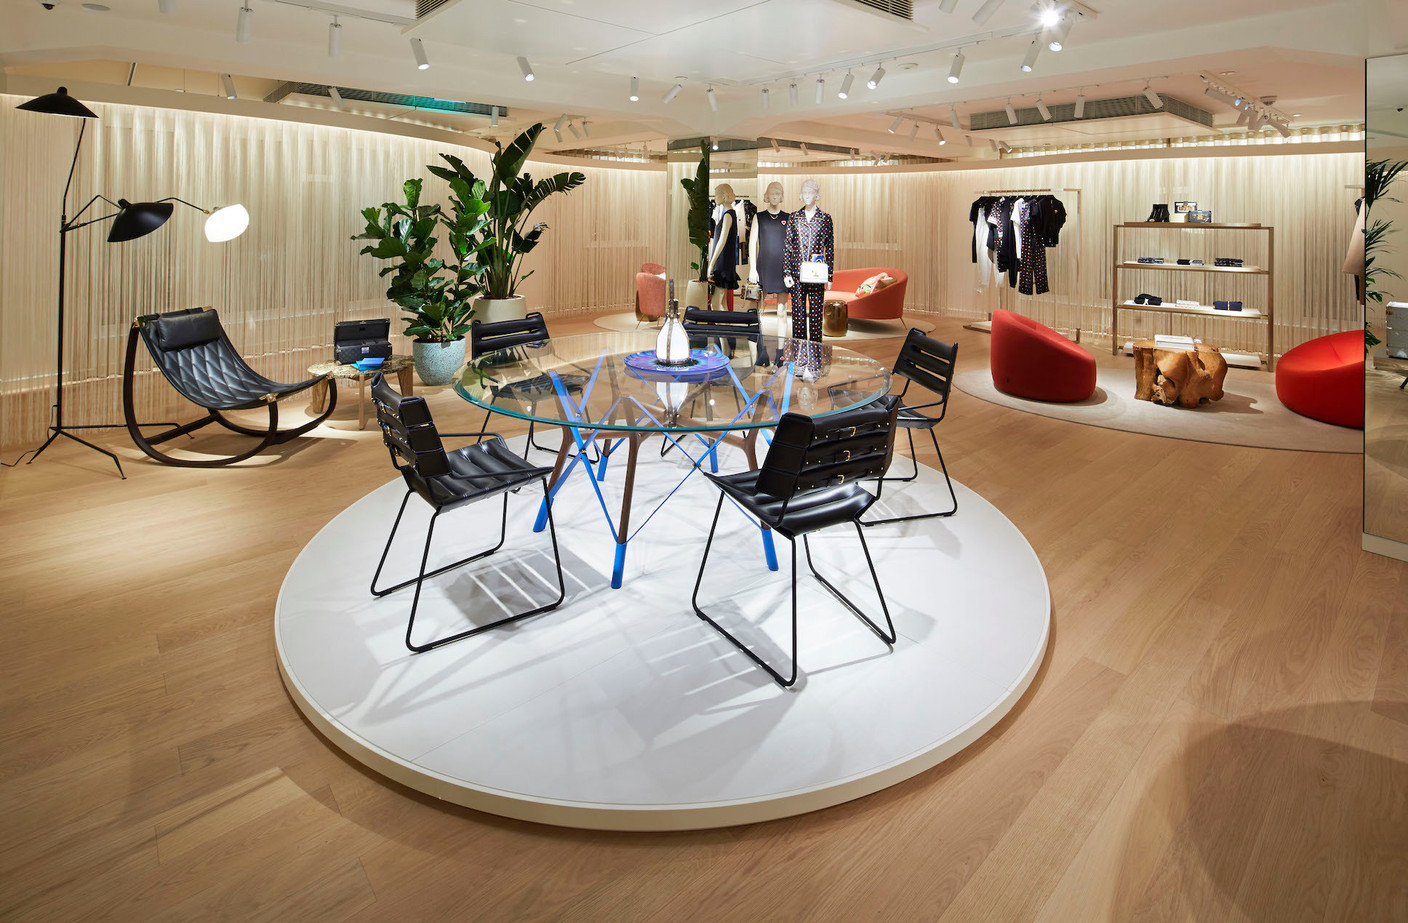 Le mobilier créé pour Louis Vuitton dialogue avec des pièces iconiques. (Photo: Stéphane Muratet/Louis Vuitton)